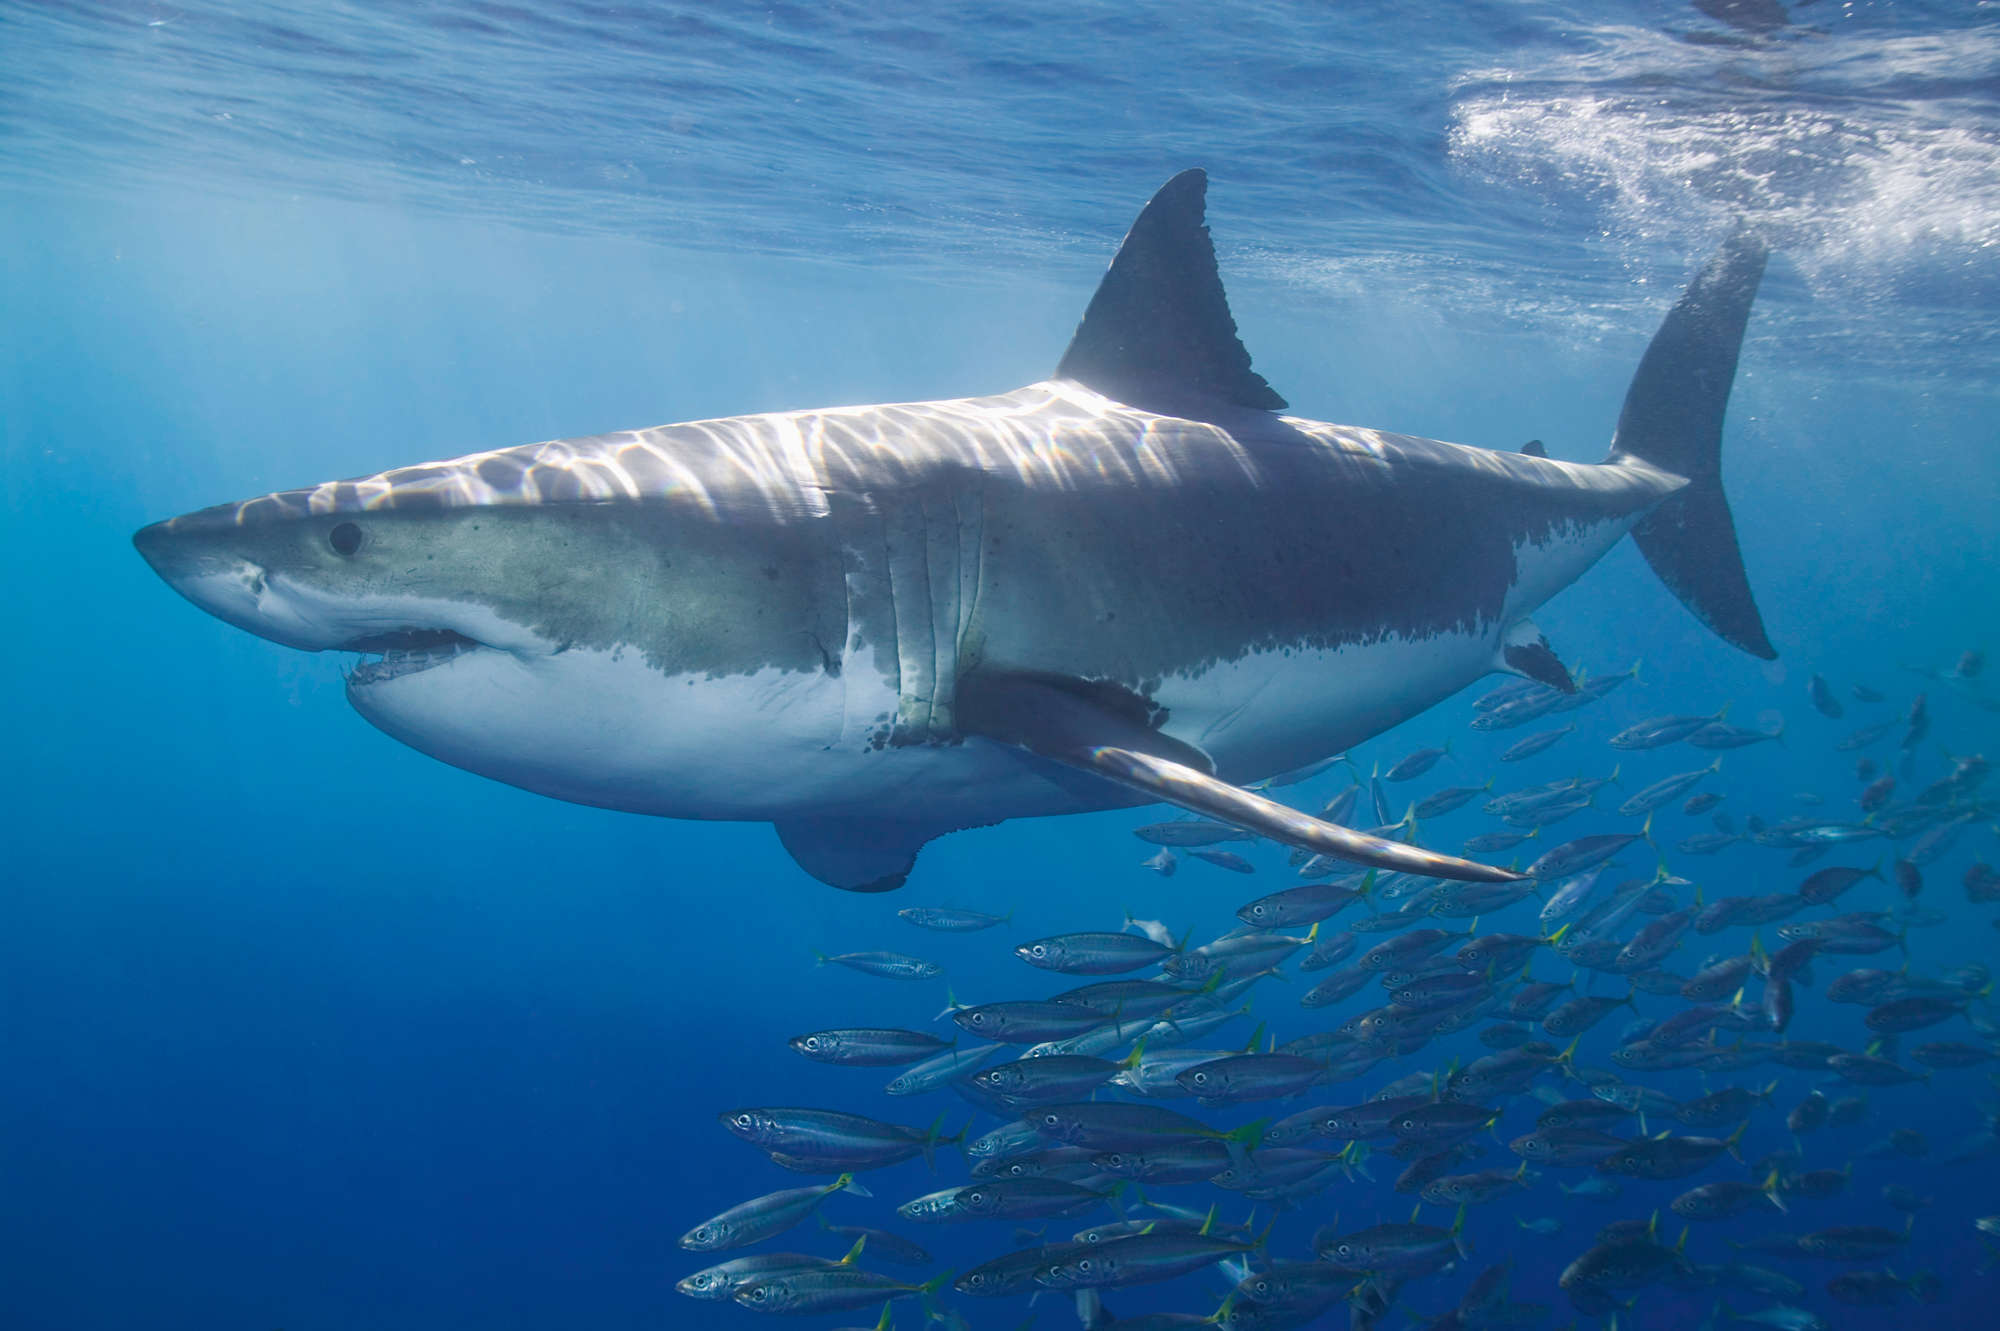             Weißer Hai Fototapete mit Fischschwarm auf Premium Glattvlies
        